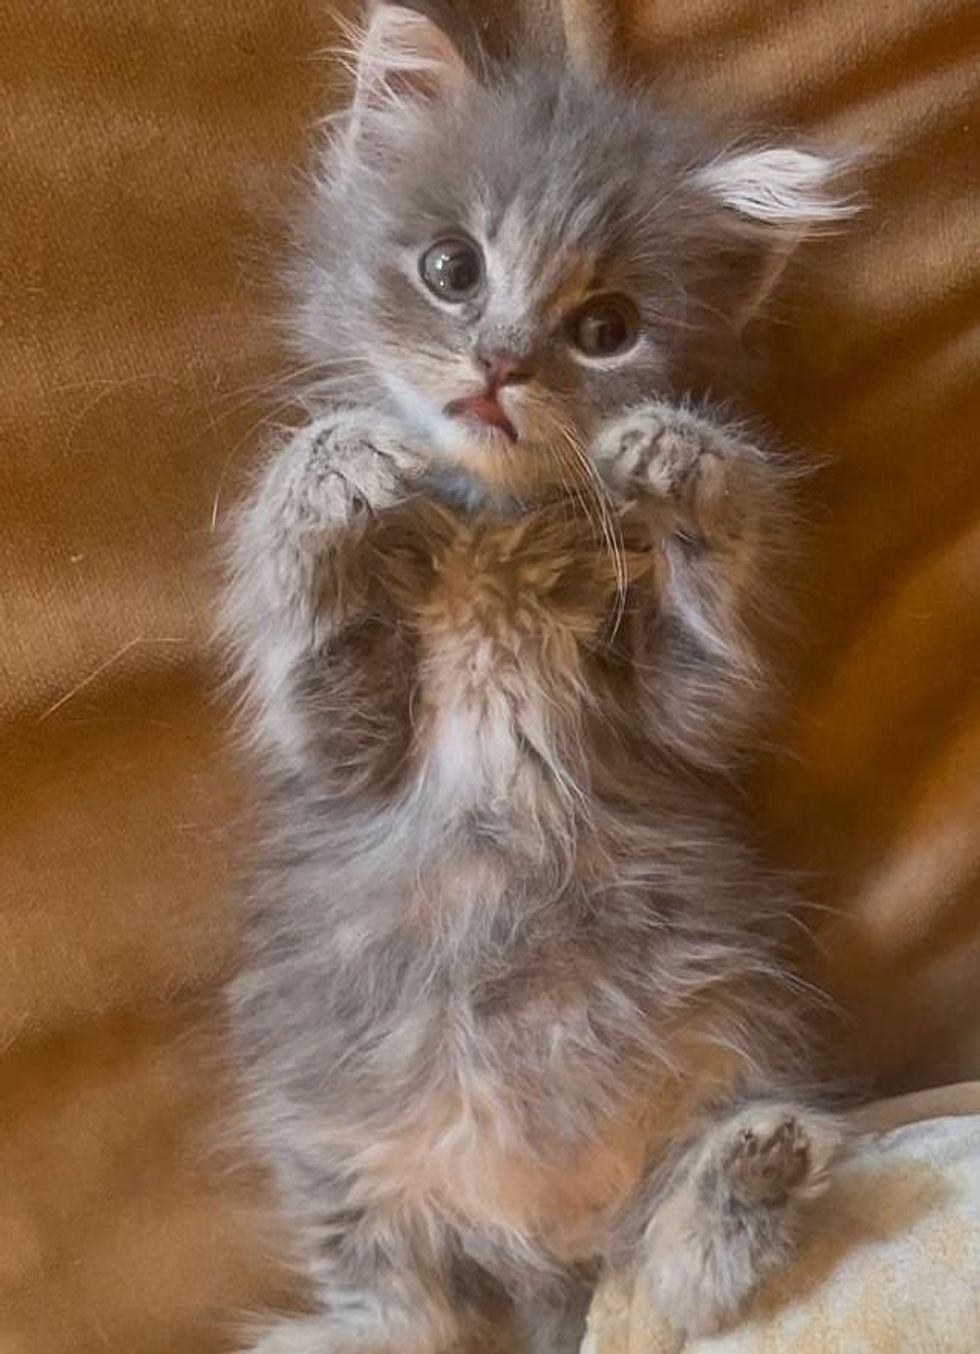 sweet kitten belly